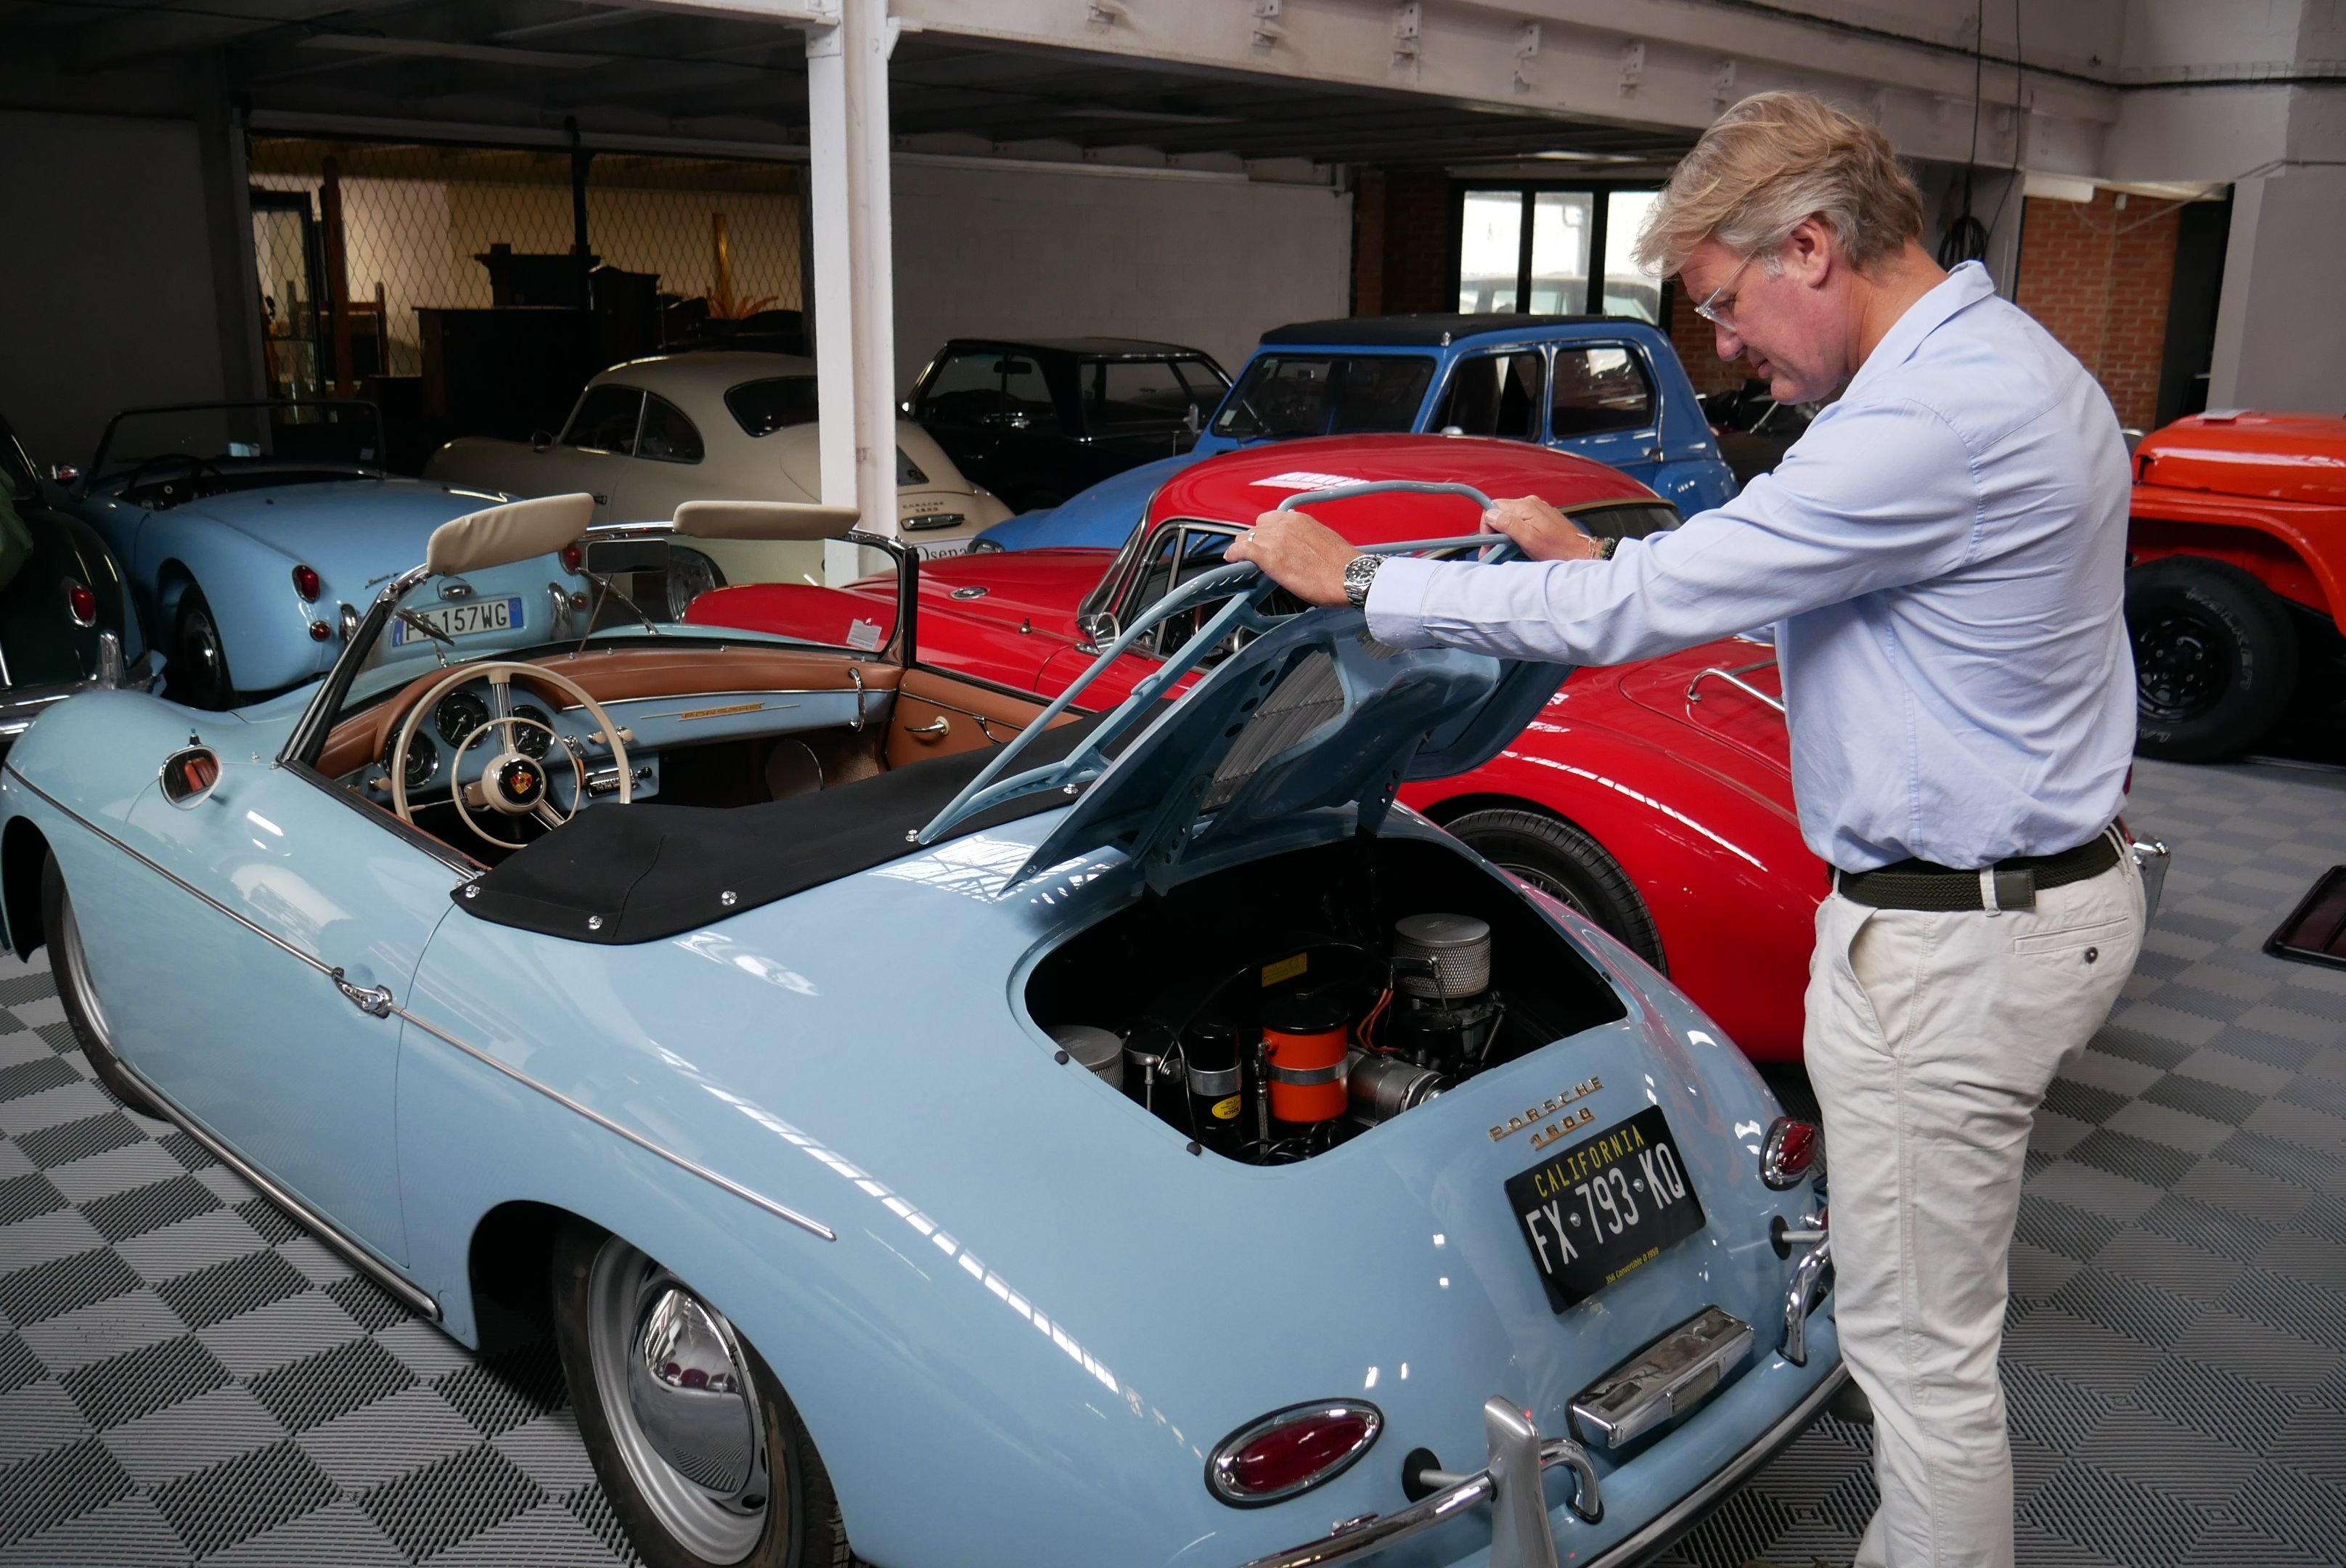 Fontainebleau (Seine-et-Marne). La maison Osenat organise sa vente d'été le lundi 10 juillet. Parmi les véhicules proposés, cette Porsche 356 Speedster de 1959, à sa couleur d’origine, un « Meissen Blue ». Mise à prix : 200 000 euros. LP/Pauline Saint